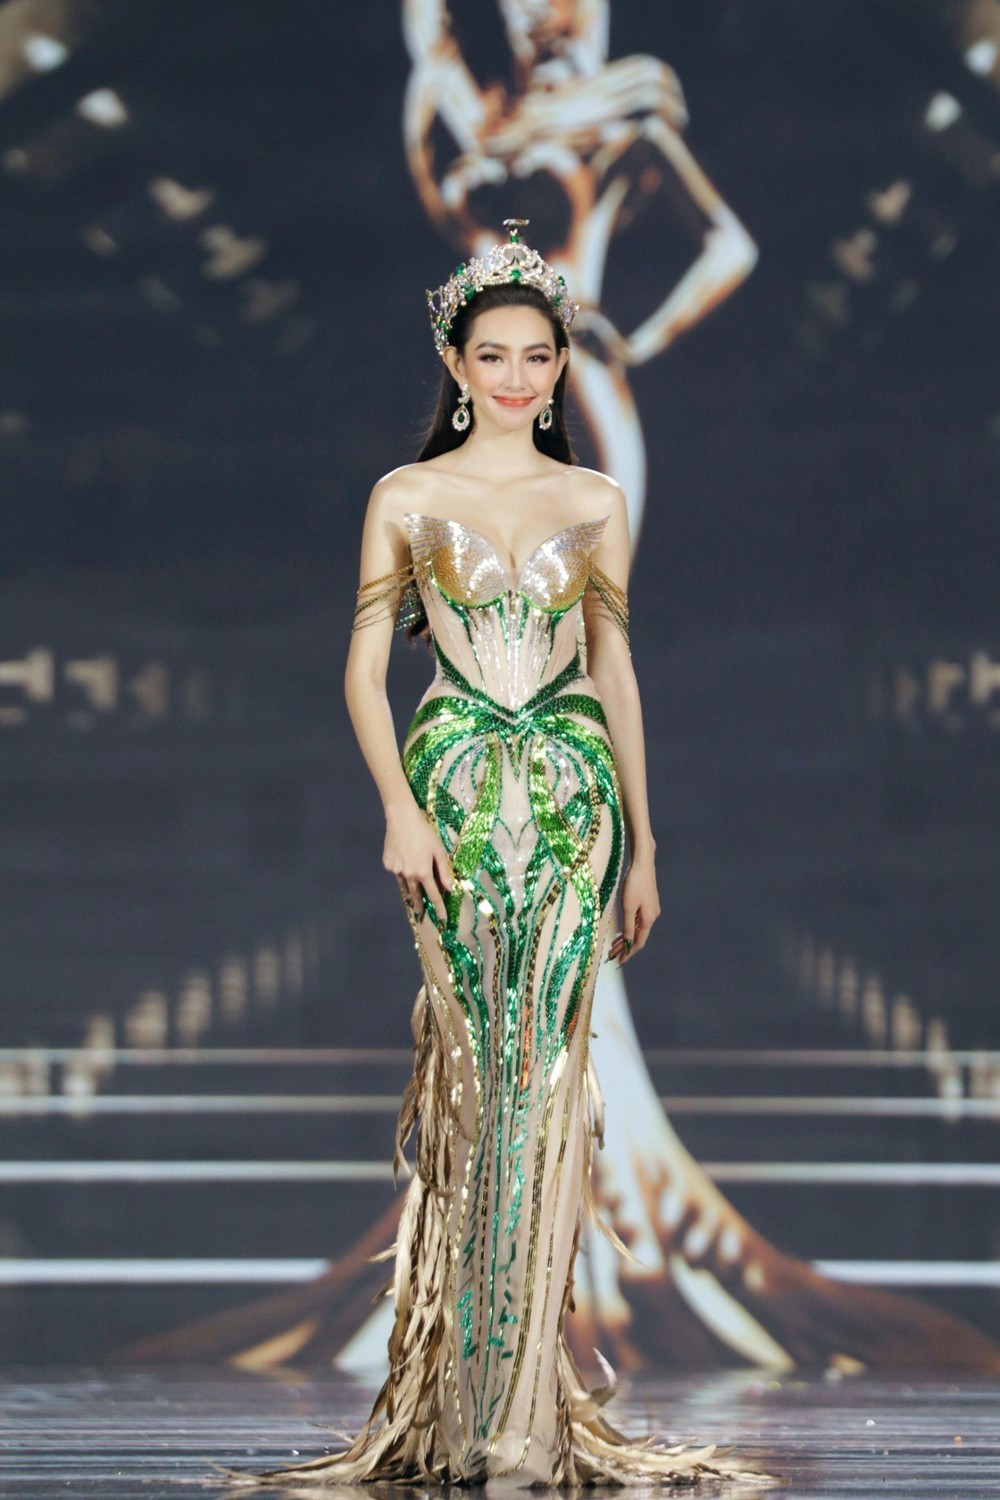 Hoa hậu Thùy Tiên: Ý nghĩa những bộ đầm đẹp nhất trong nhiệm kỳ Miss Grand International 2021